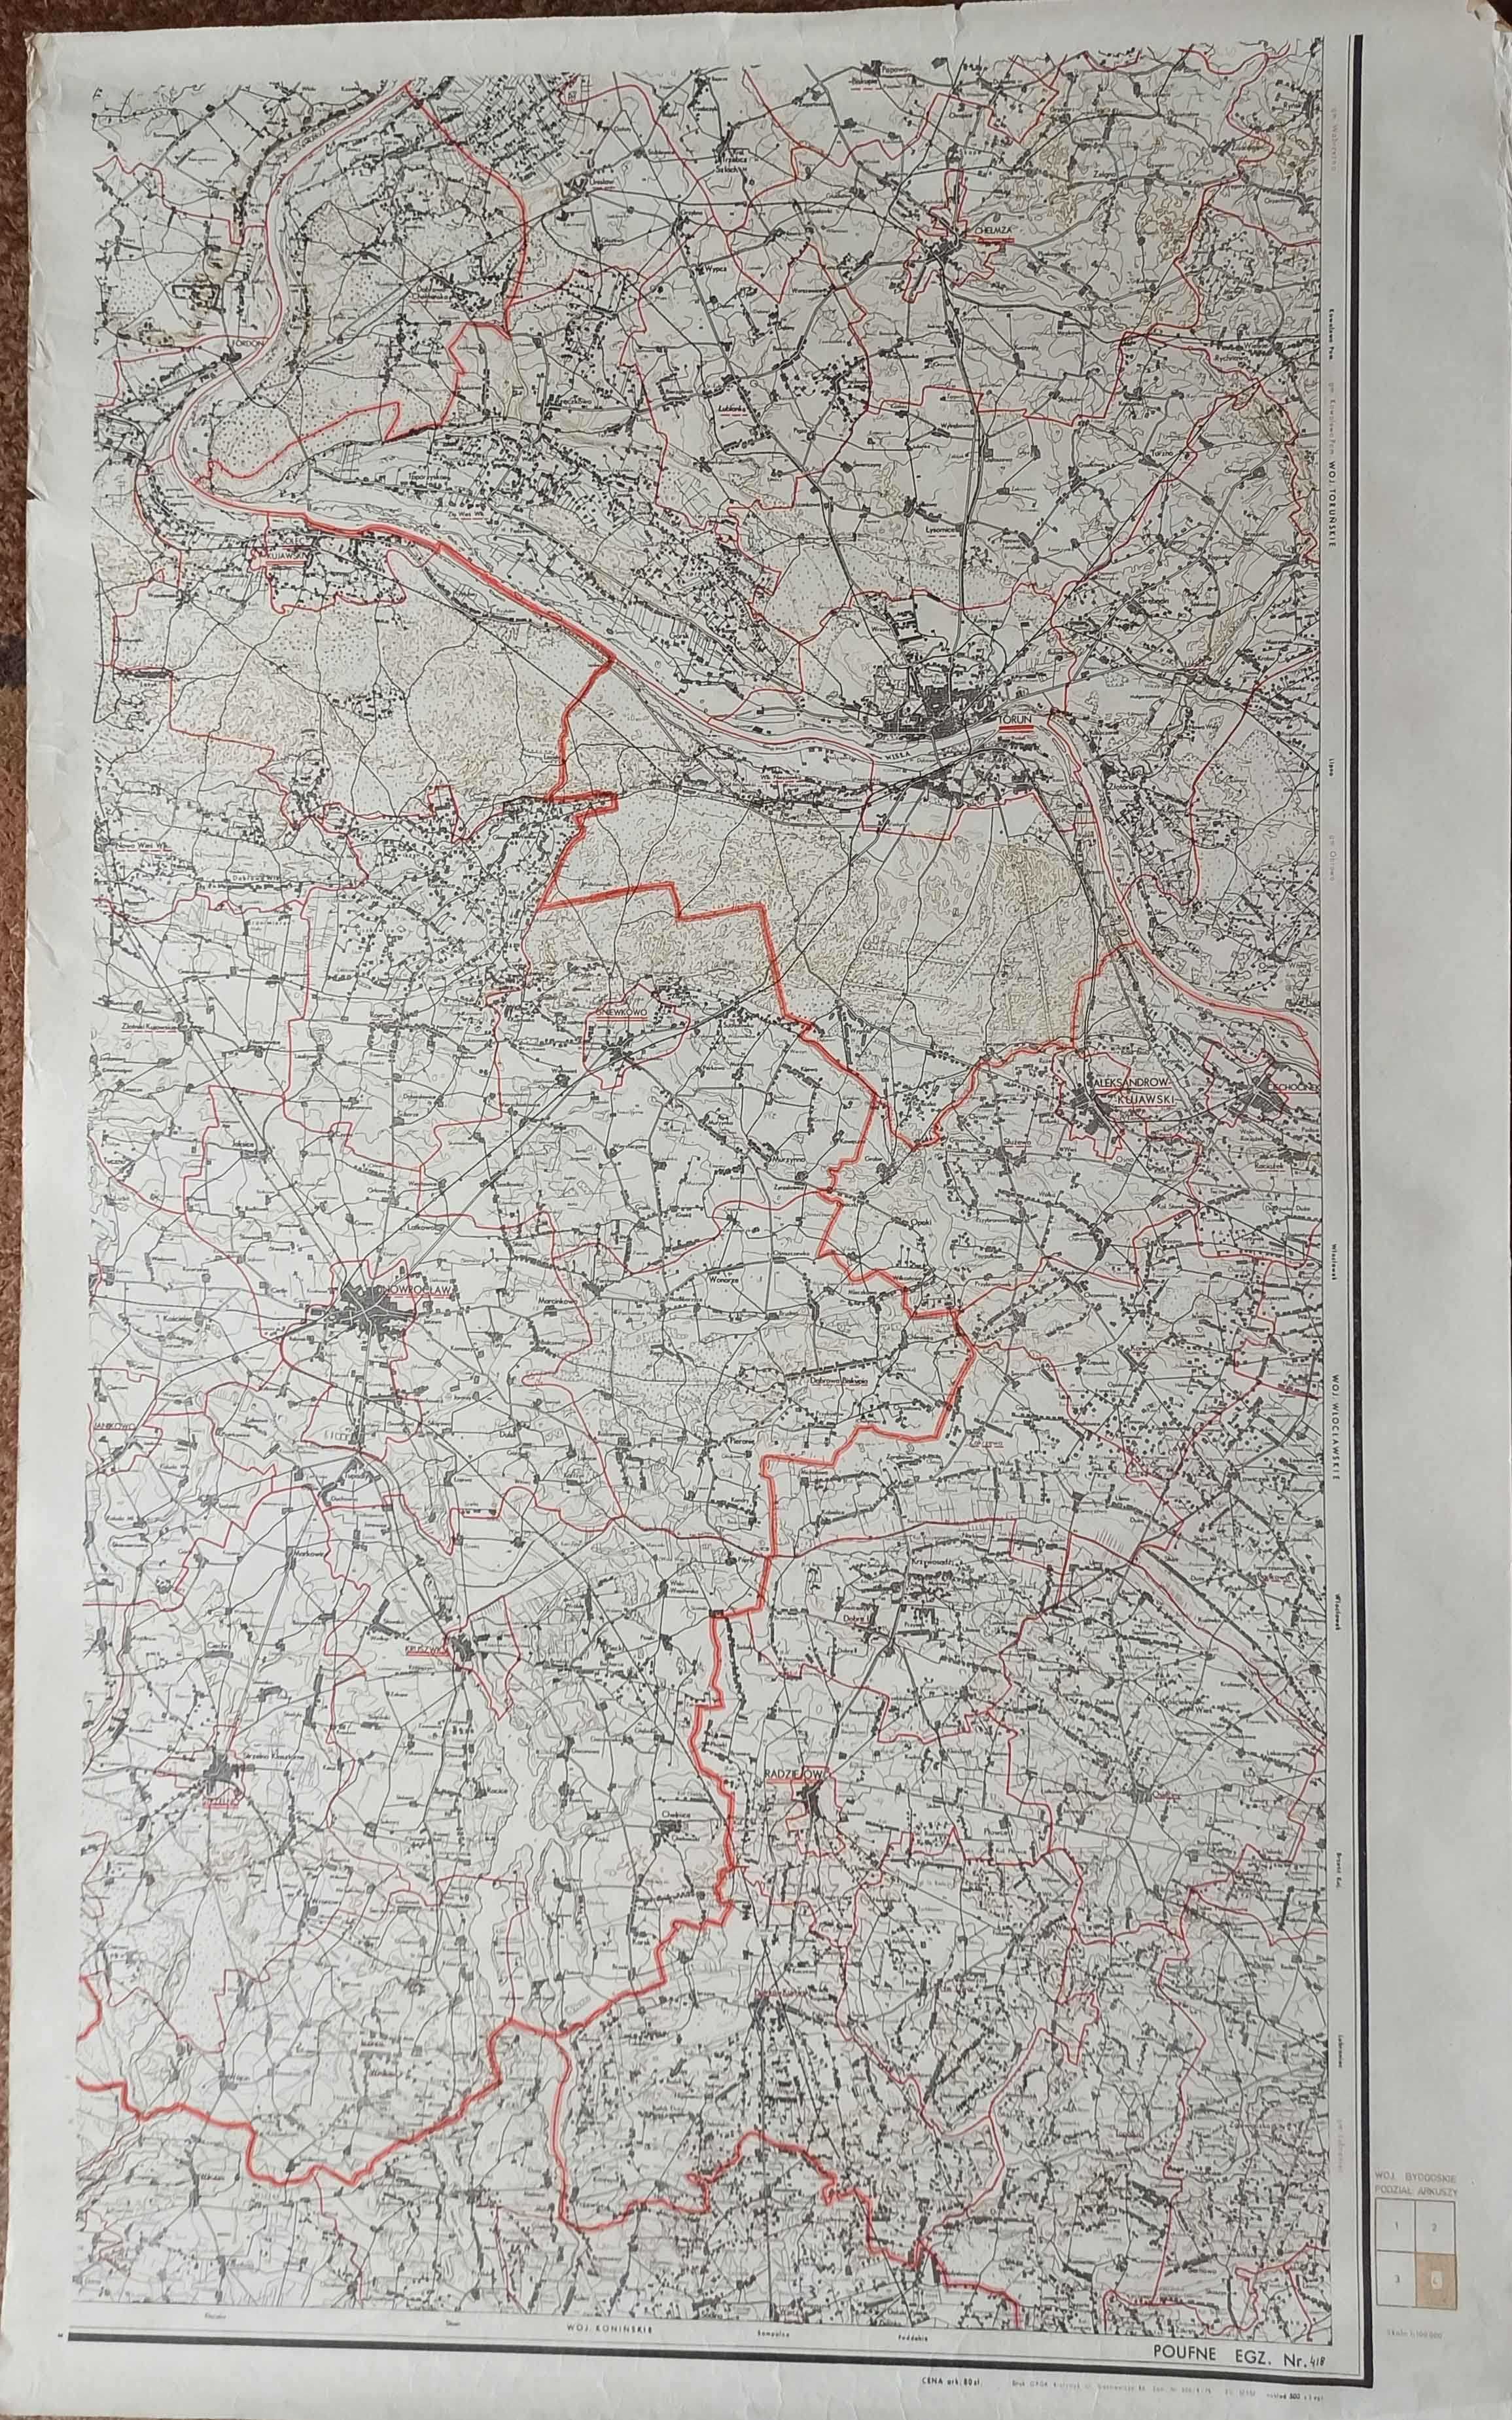 Mapa topograficzna  1:100 000. Woj. Bydgoskie. Arkusz 4 Inowrocław